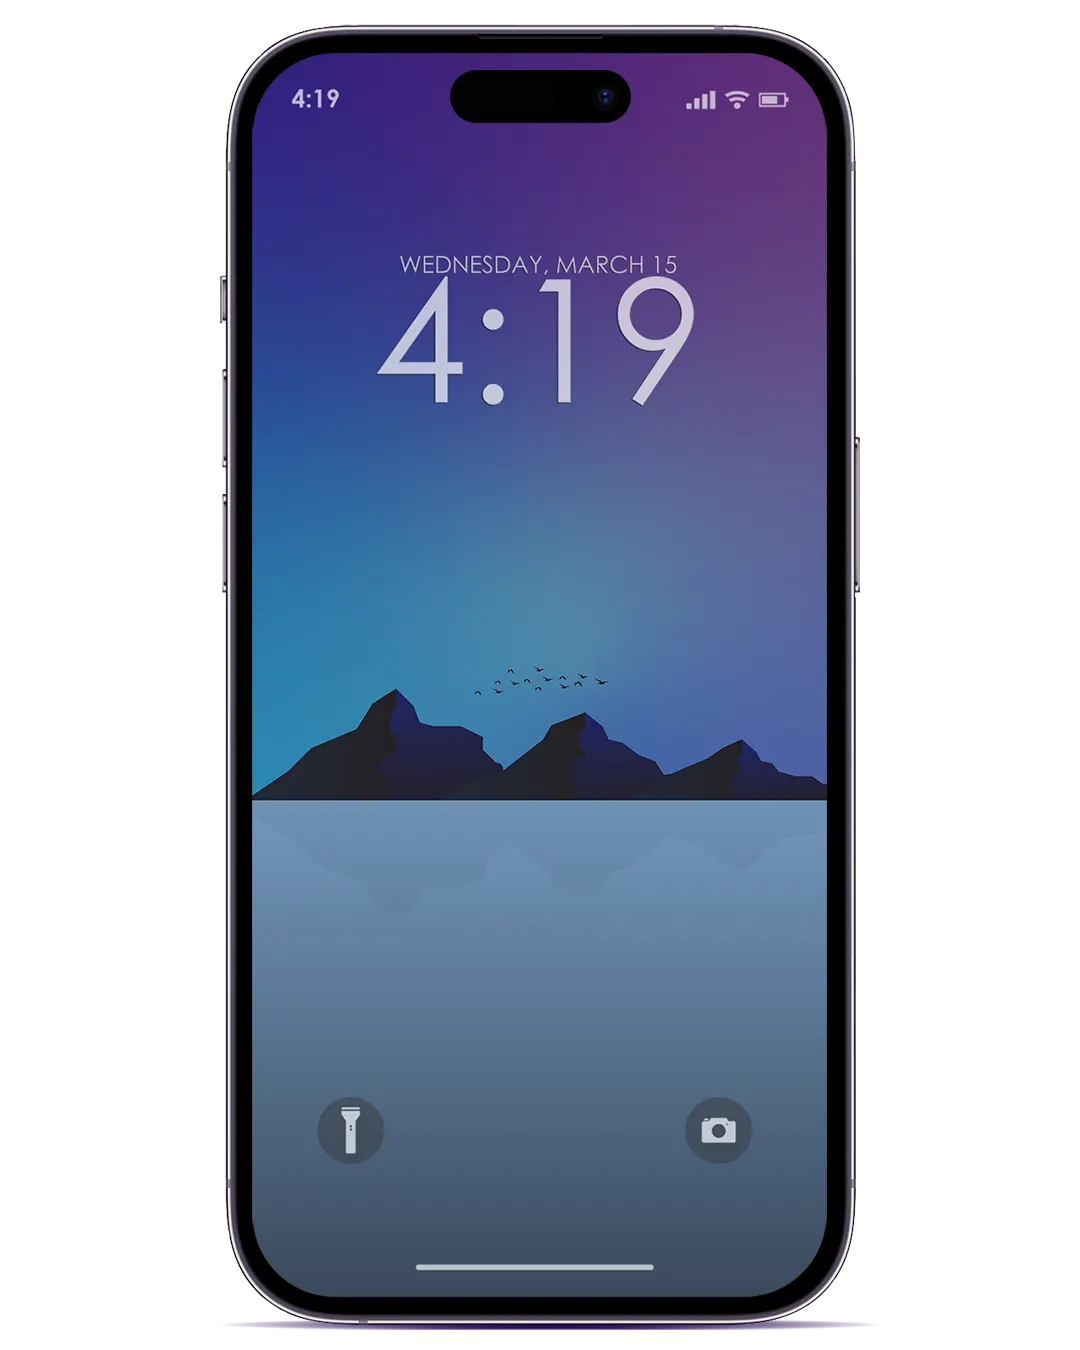 Wallpaper là một thứ không thể thiếu đối với mọi thiết bị, và hình nền 4K MINIMALIST IPHONE sẽ mang đến cho bạn một phong cách tối giản nhưng cực kỳ đẹp mắt trên chiếc điện thoại của bạn.